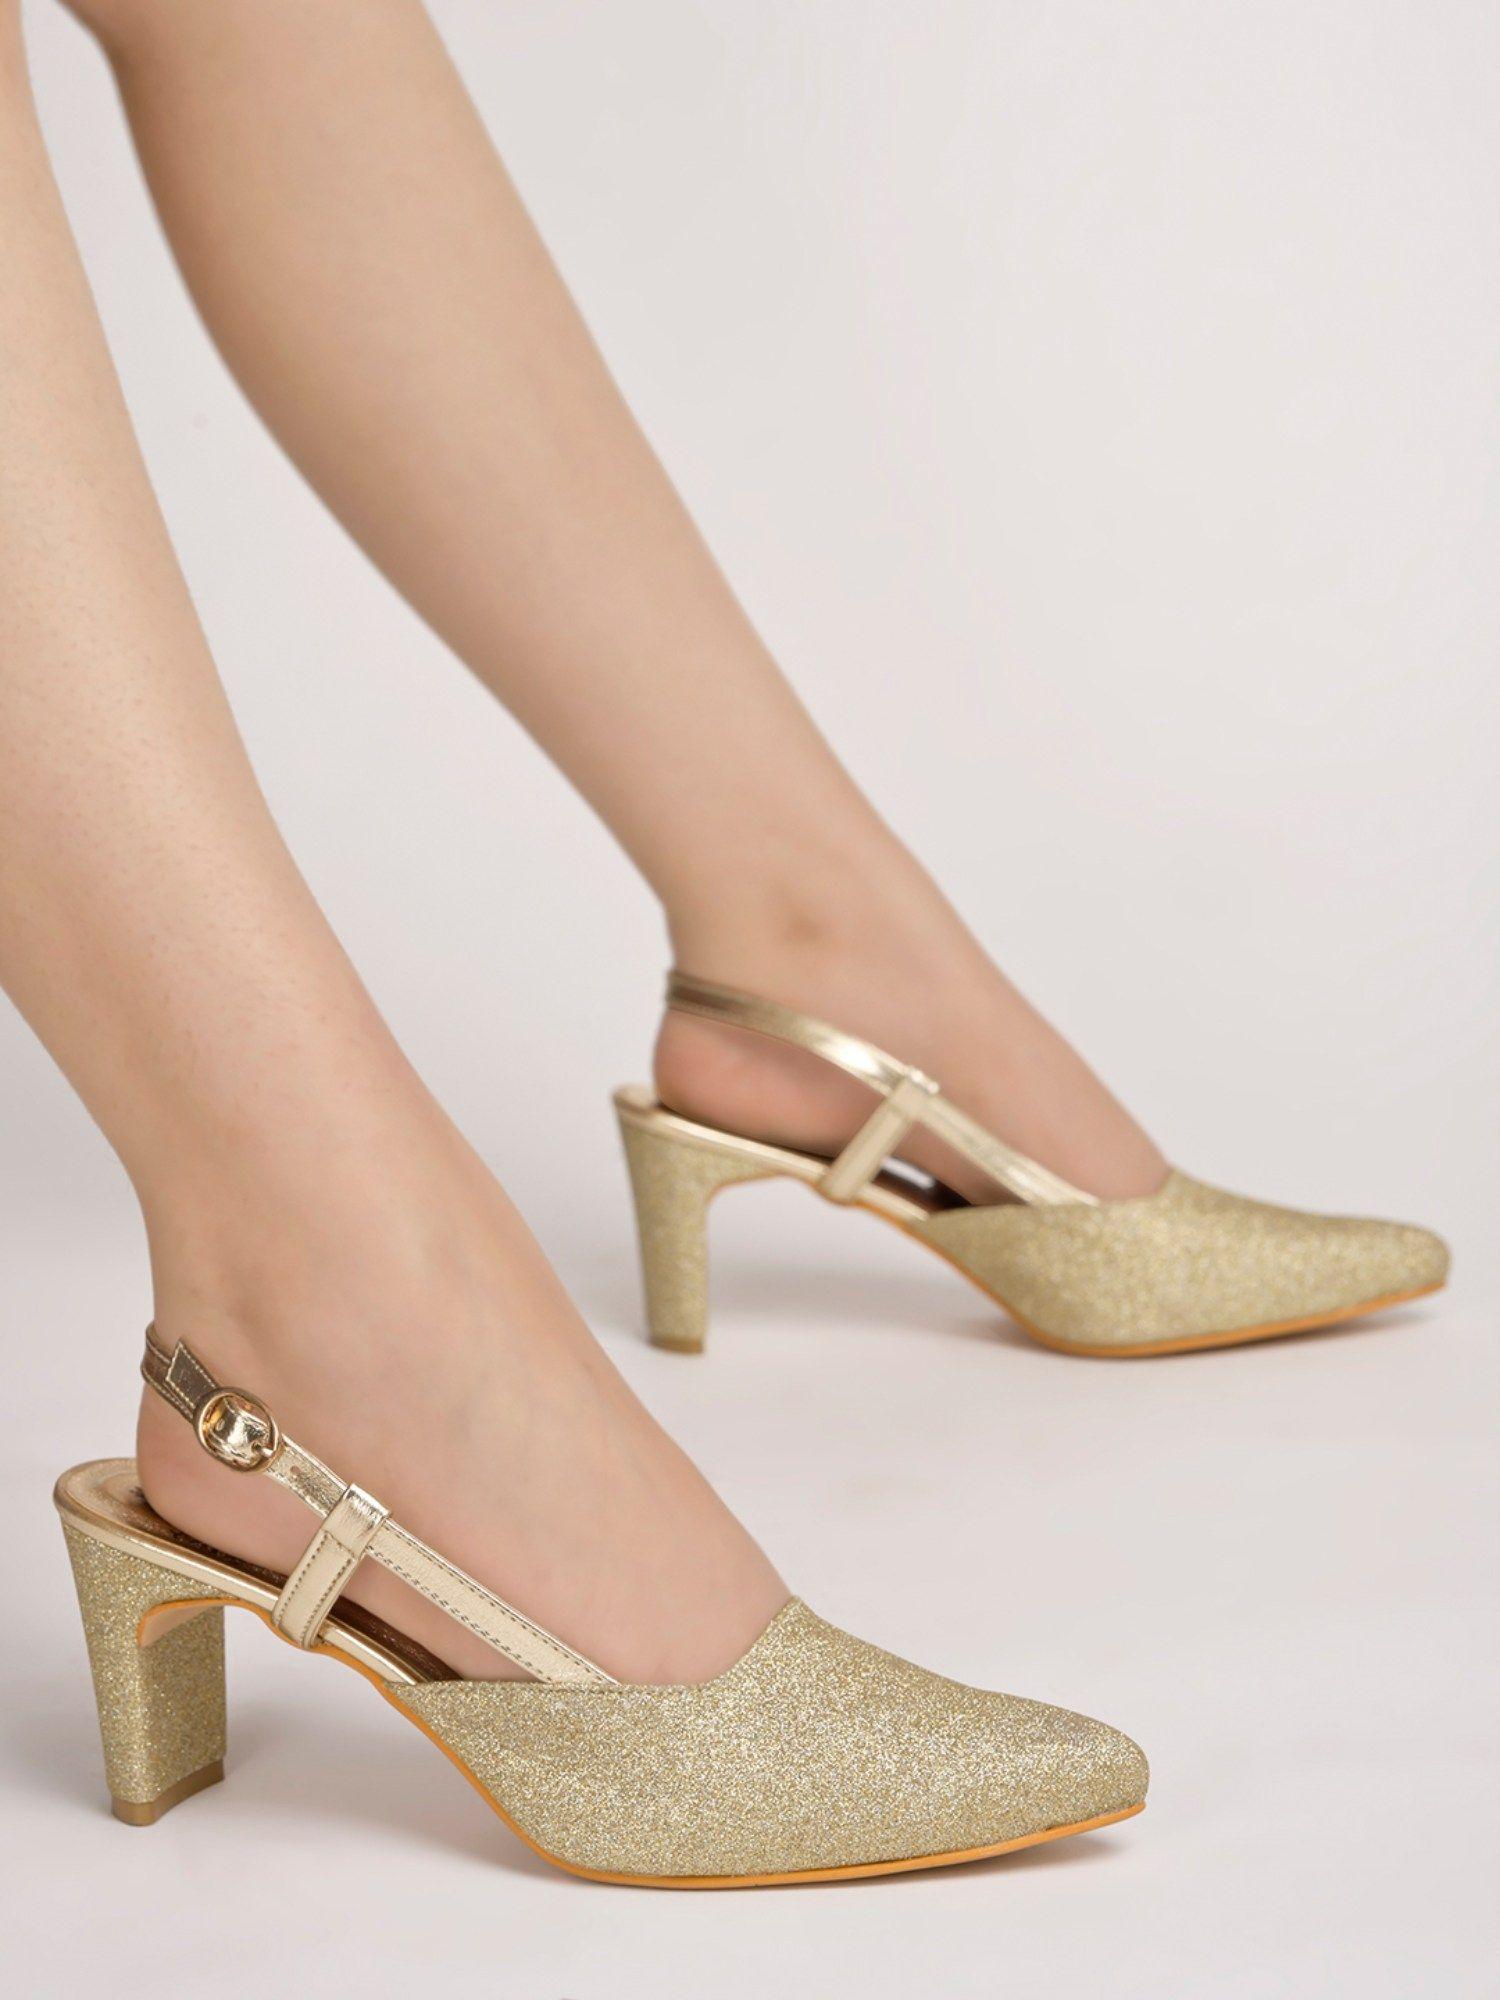 embellished ankle strap golden pumps